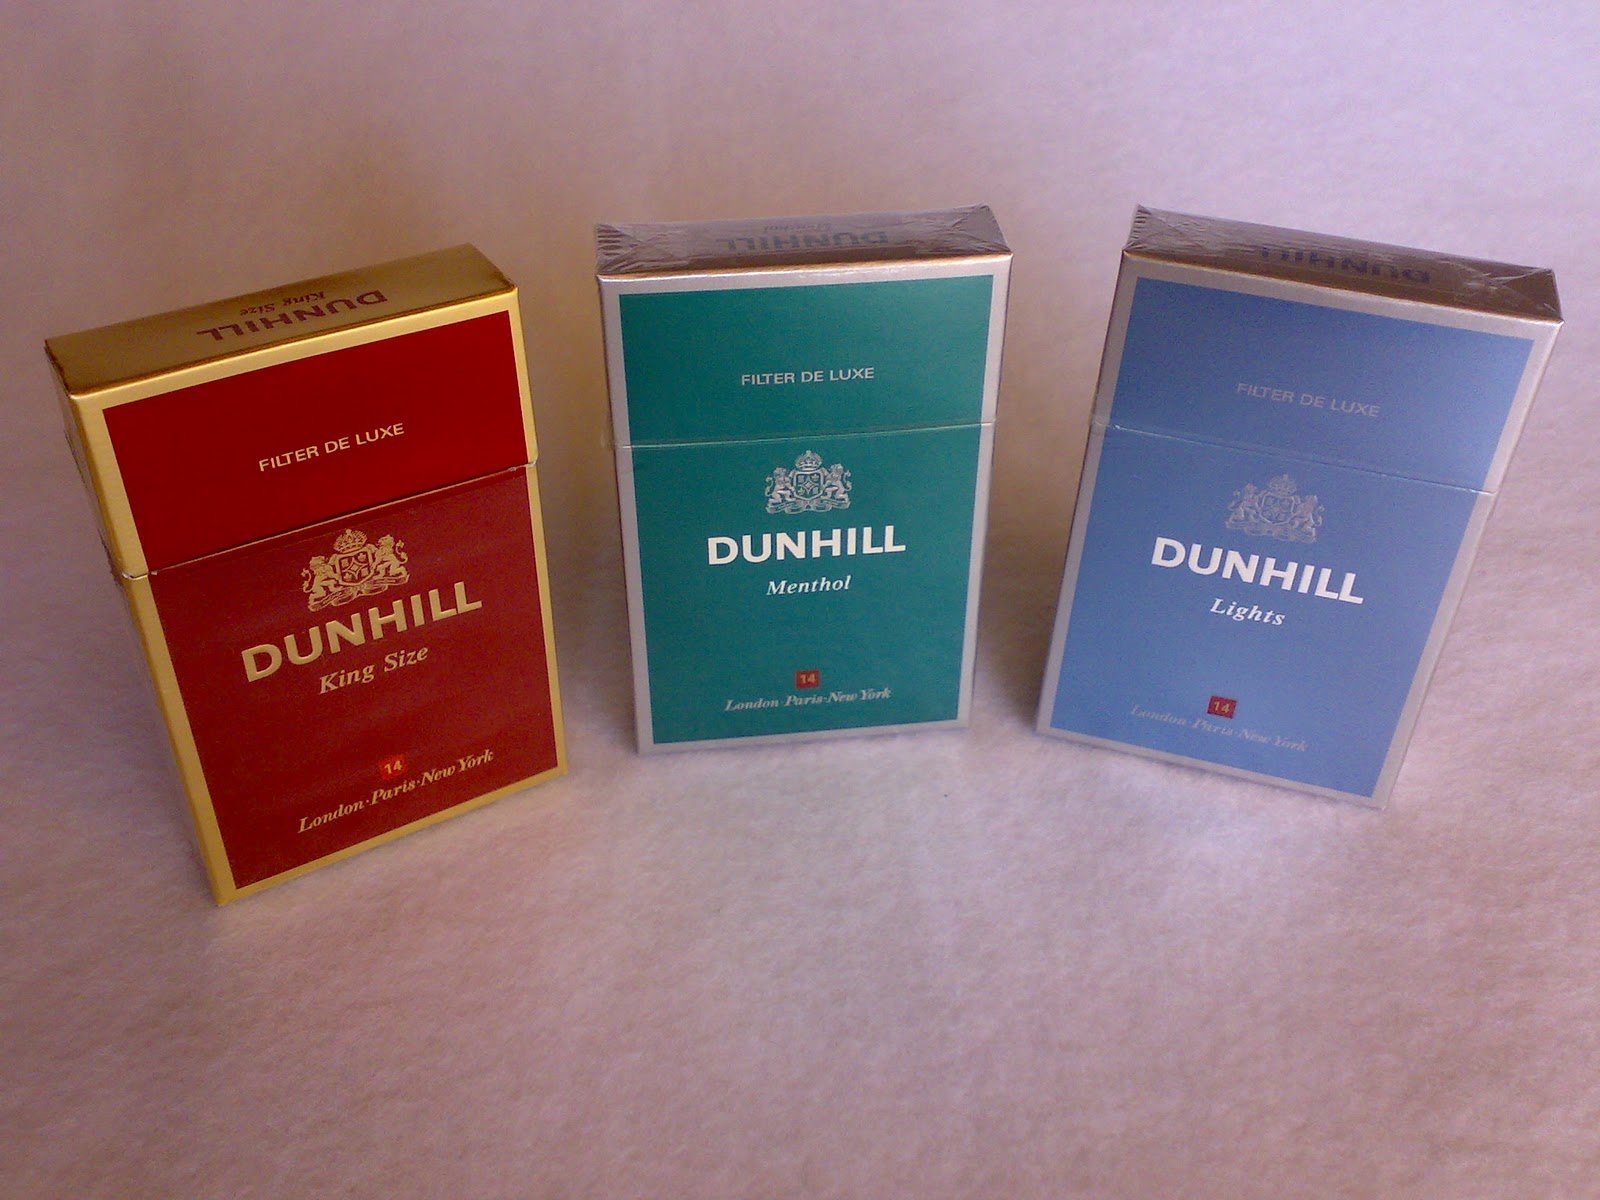 Duhill cigarettes